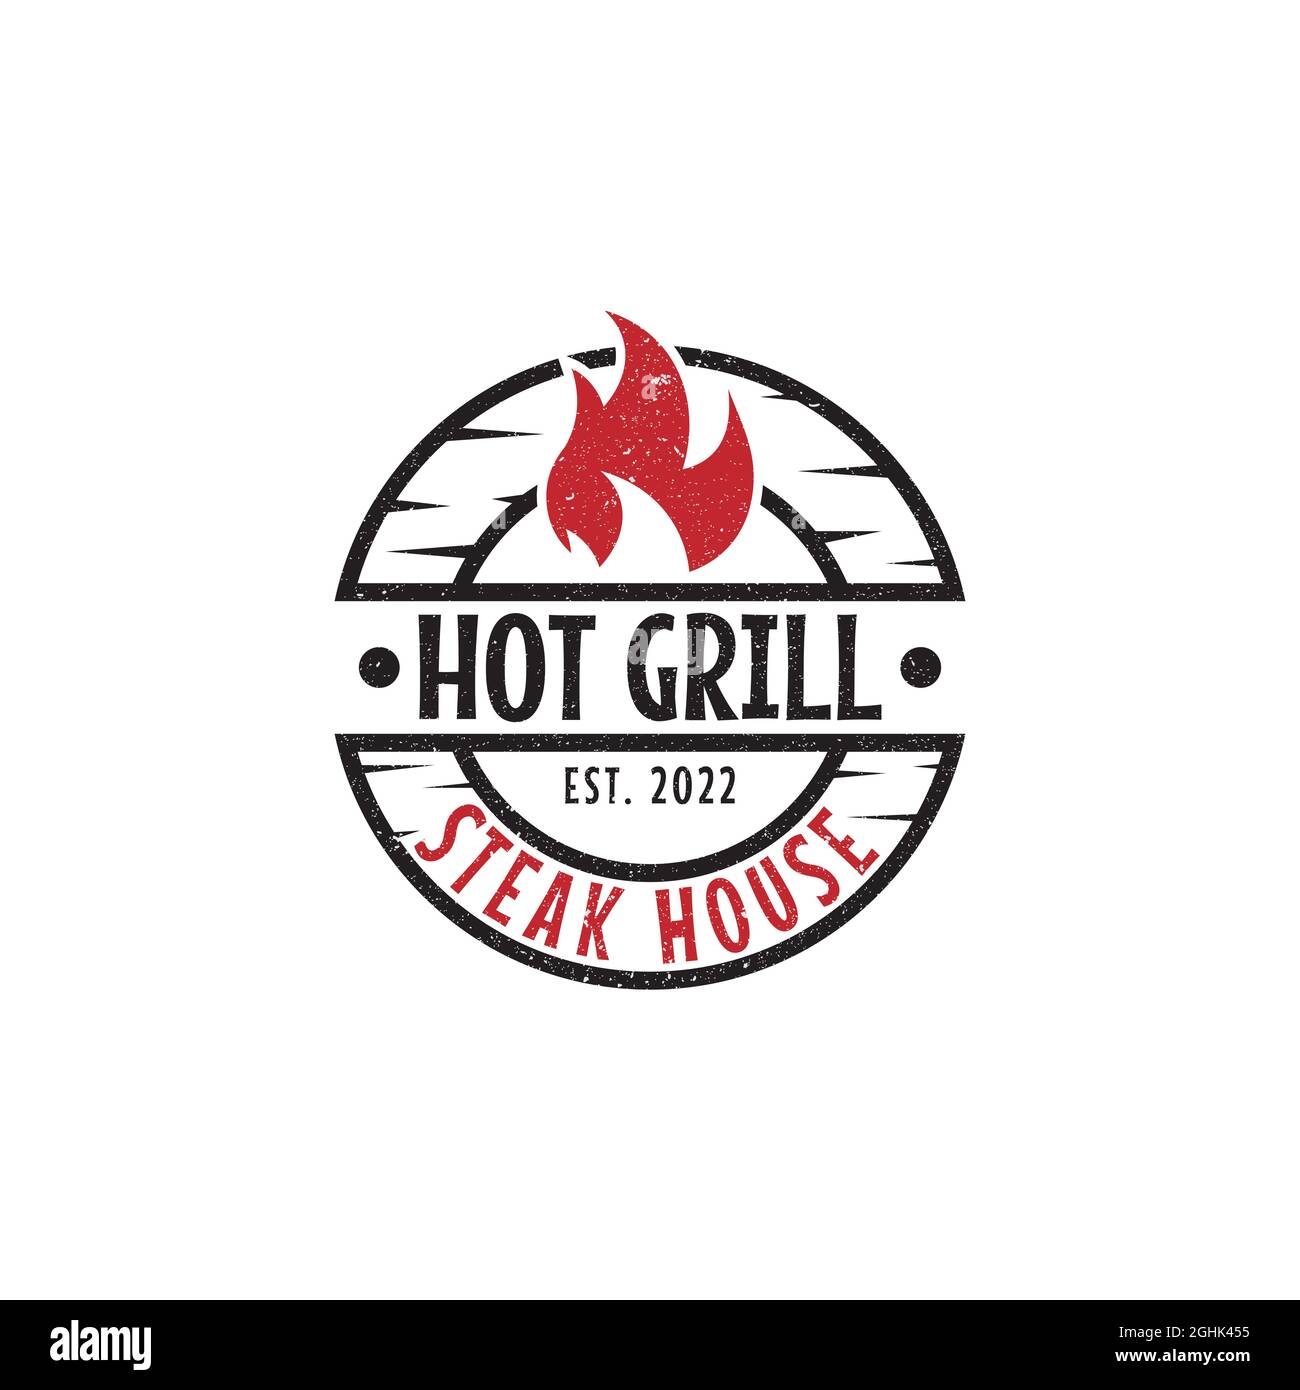 Rustikales Hot Grill Steak House Logo Design, Bar und Grill Vektor Illustration, am besten für Lebensmittel Restaurant Zeichen Symbol Stock Vektor